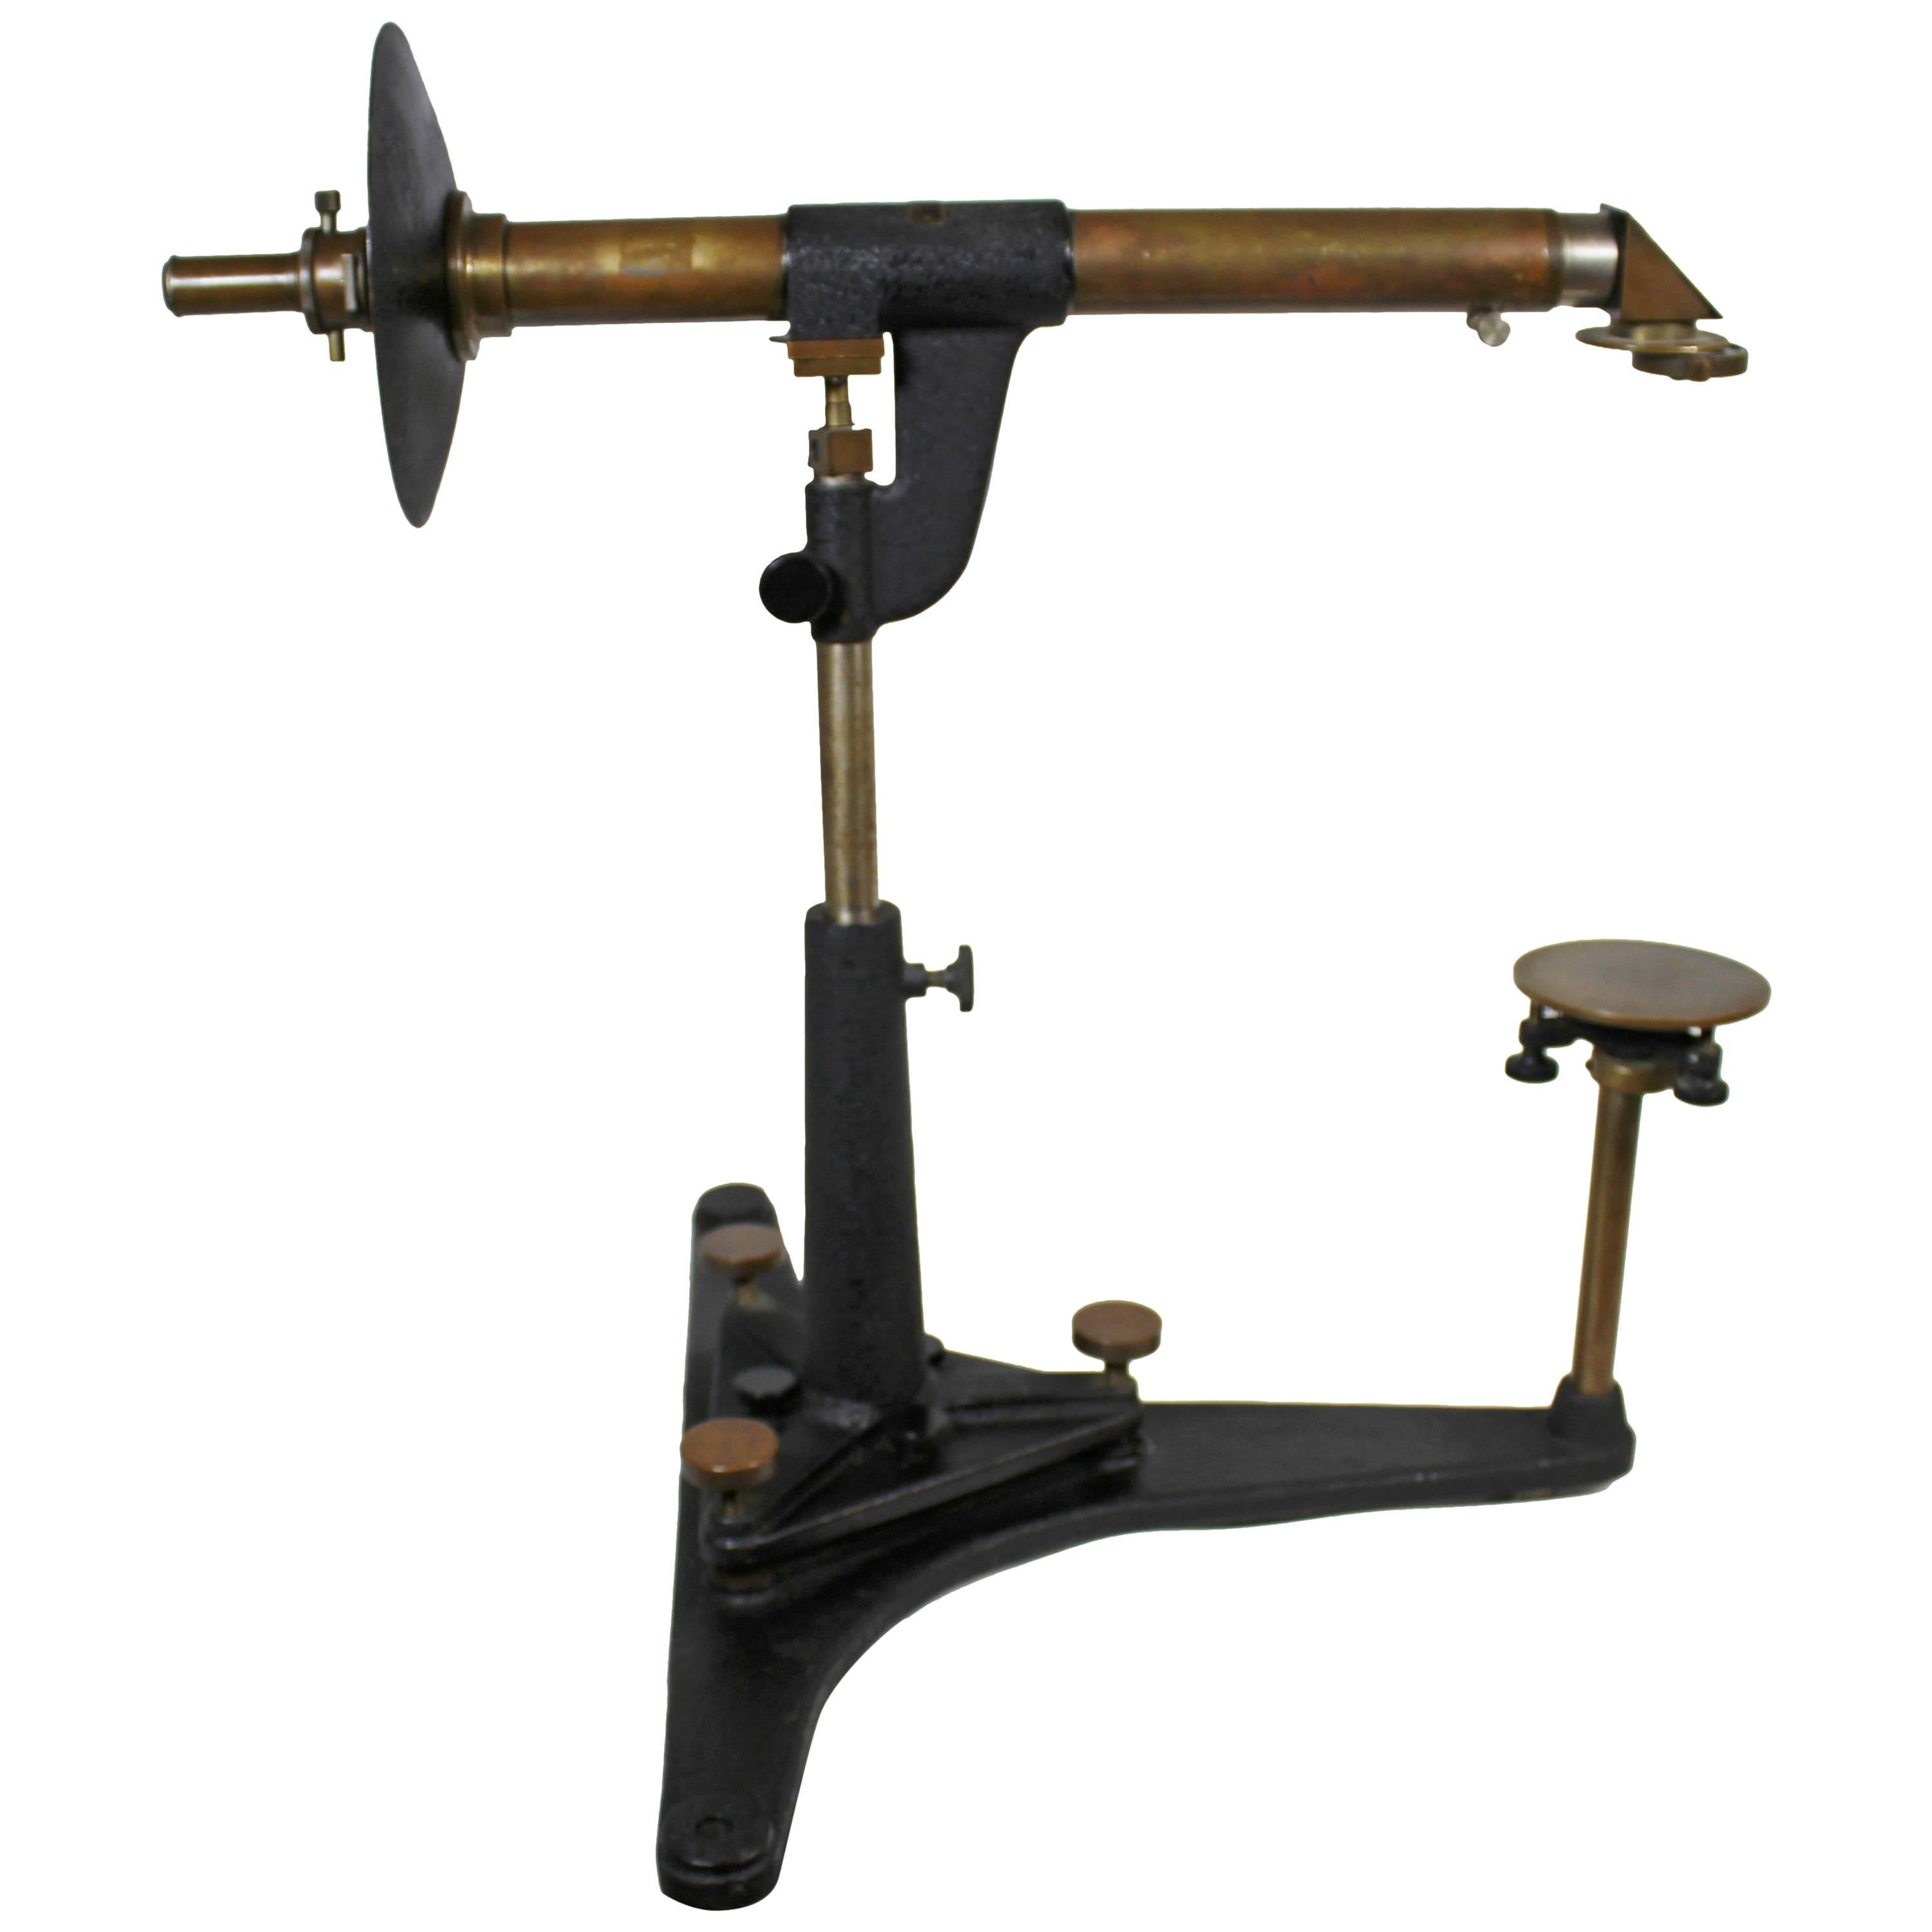 Gaertner-Spektroskop, 1930er Jahre Wissenschaftliches Instrument